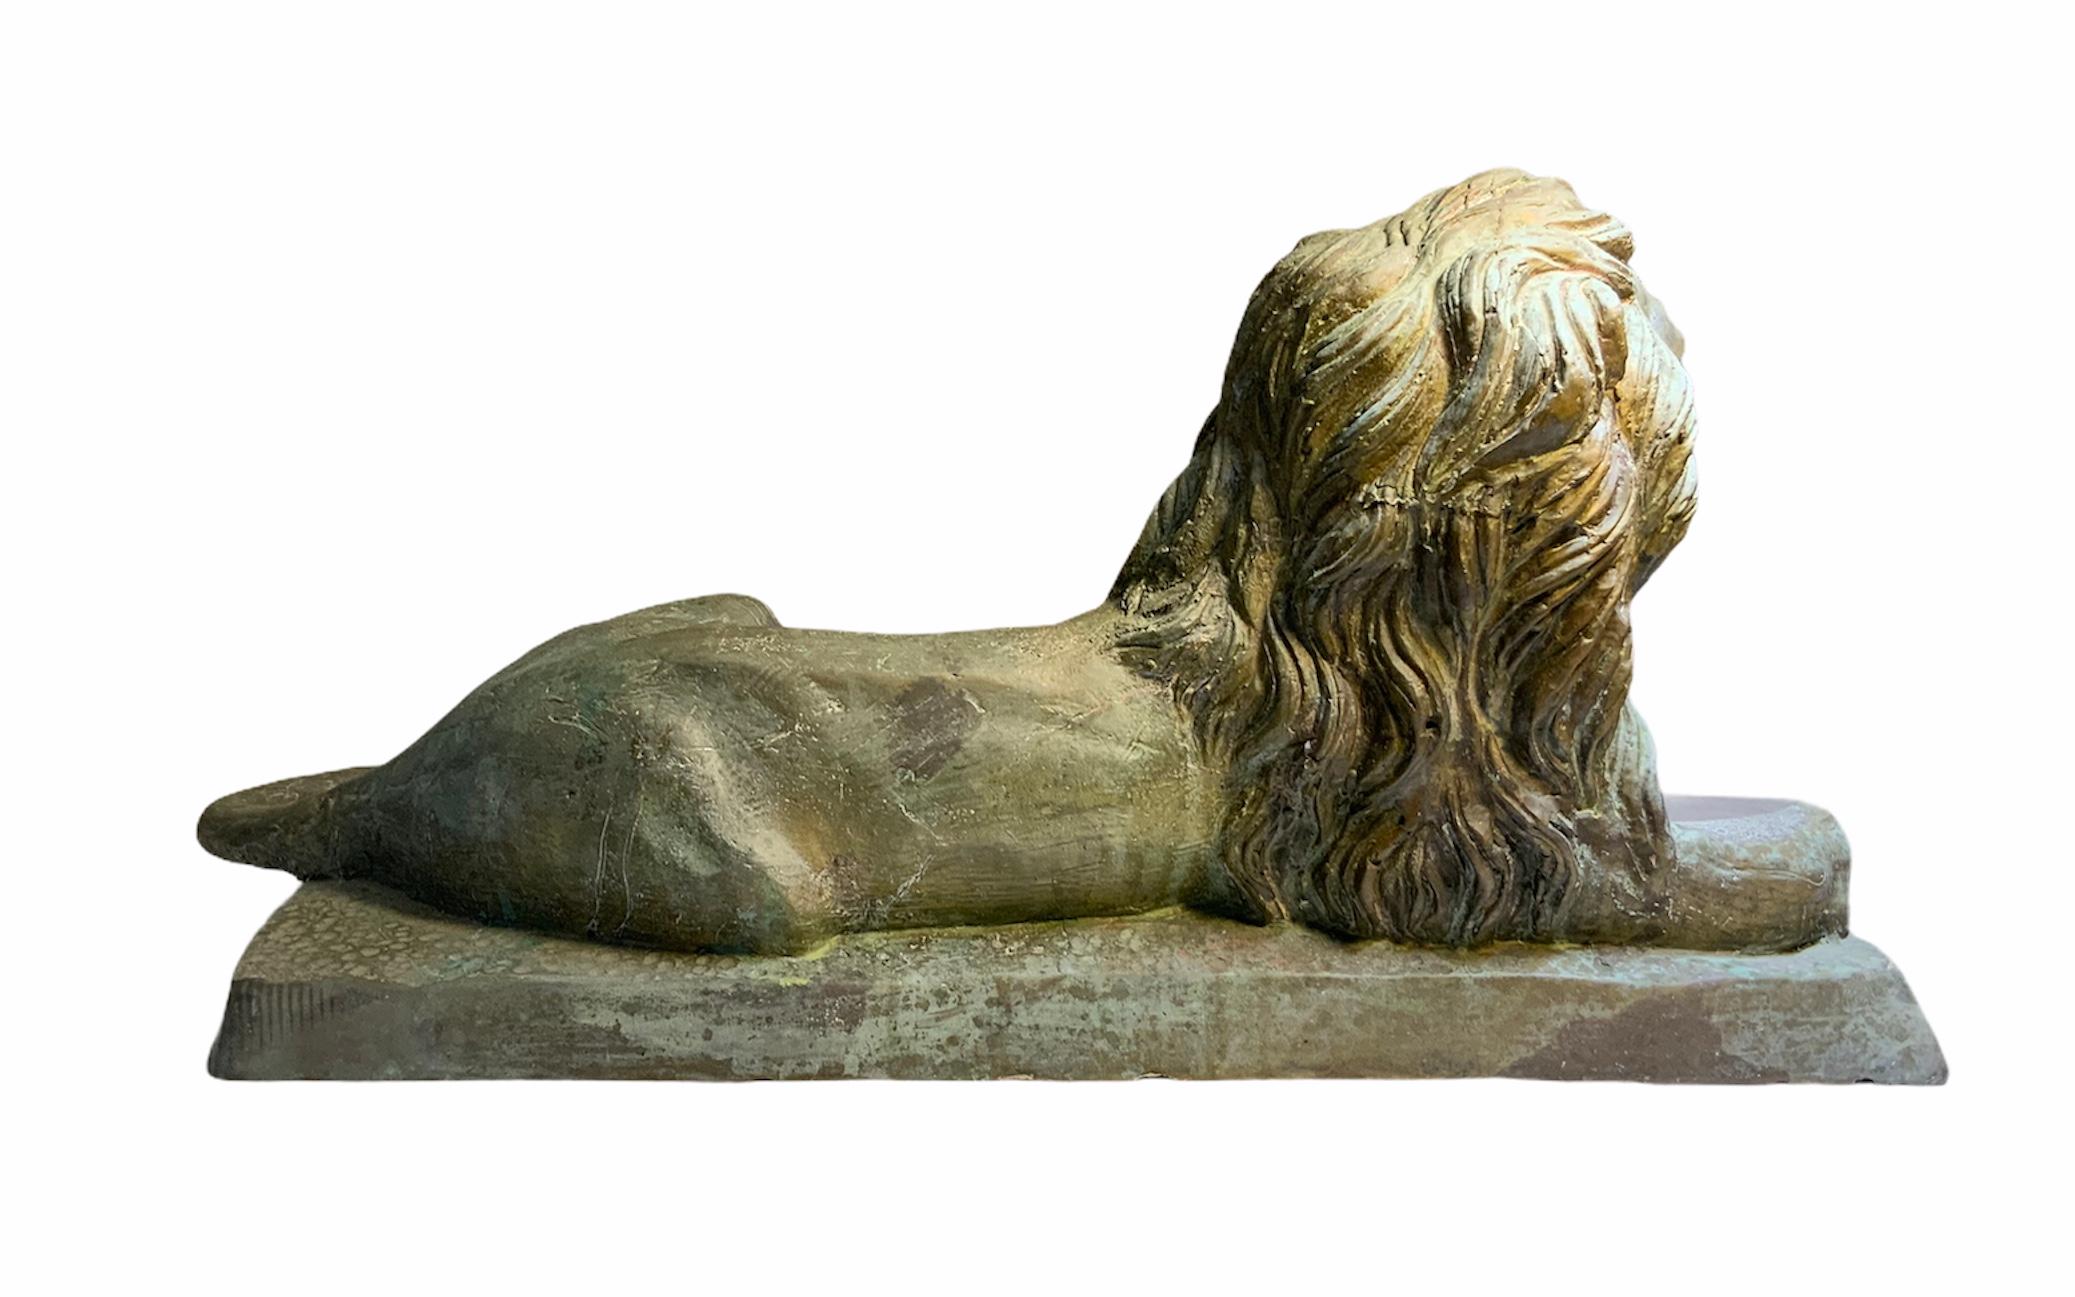 Il s'agit d'une grande sculpture en bronze de très bonne facture représentant un lion couché sur une base rectangulaire. Les détails de la sculpture de l'épaisse crinière, des pattes, de la queue, du nez et des yeux sont remarquables. Dans la